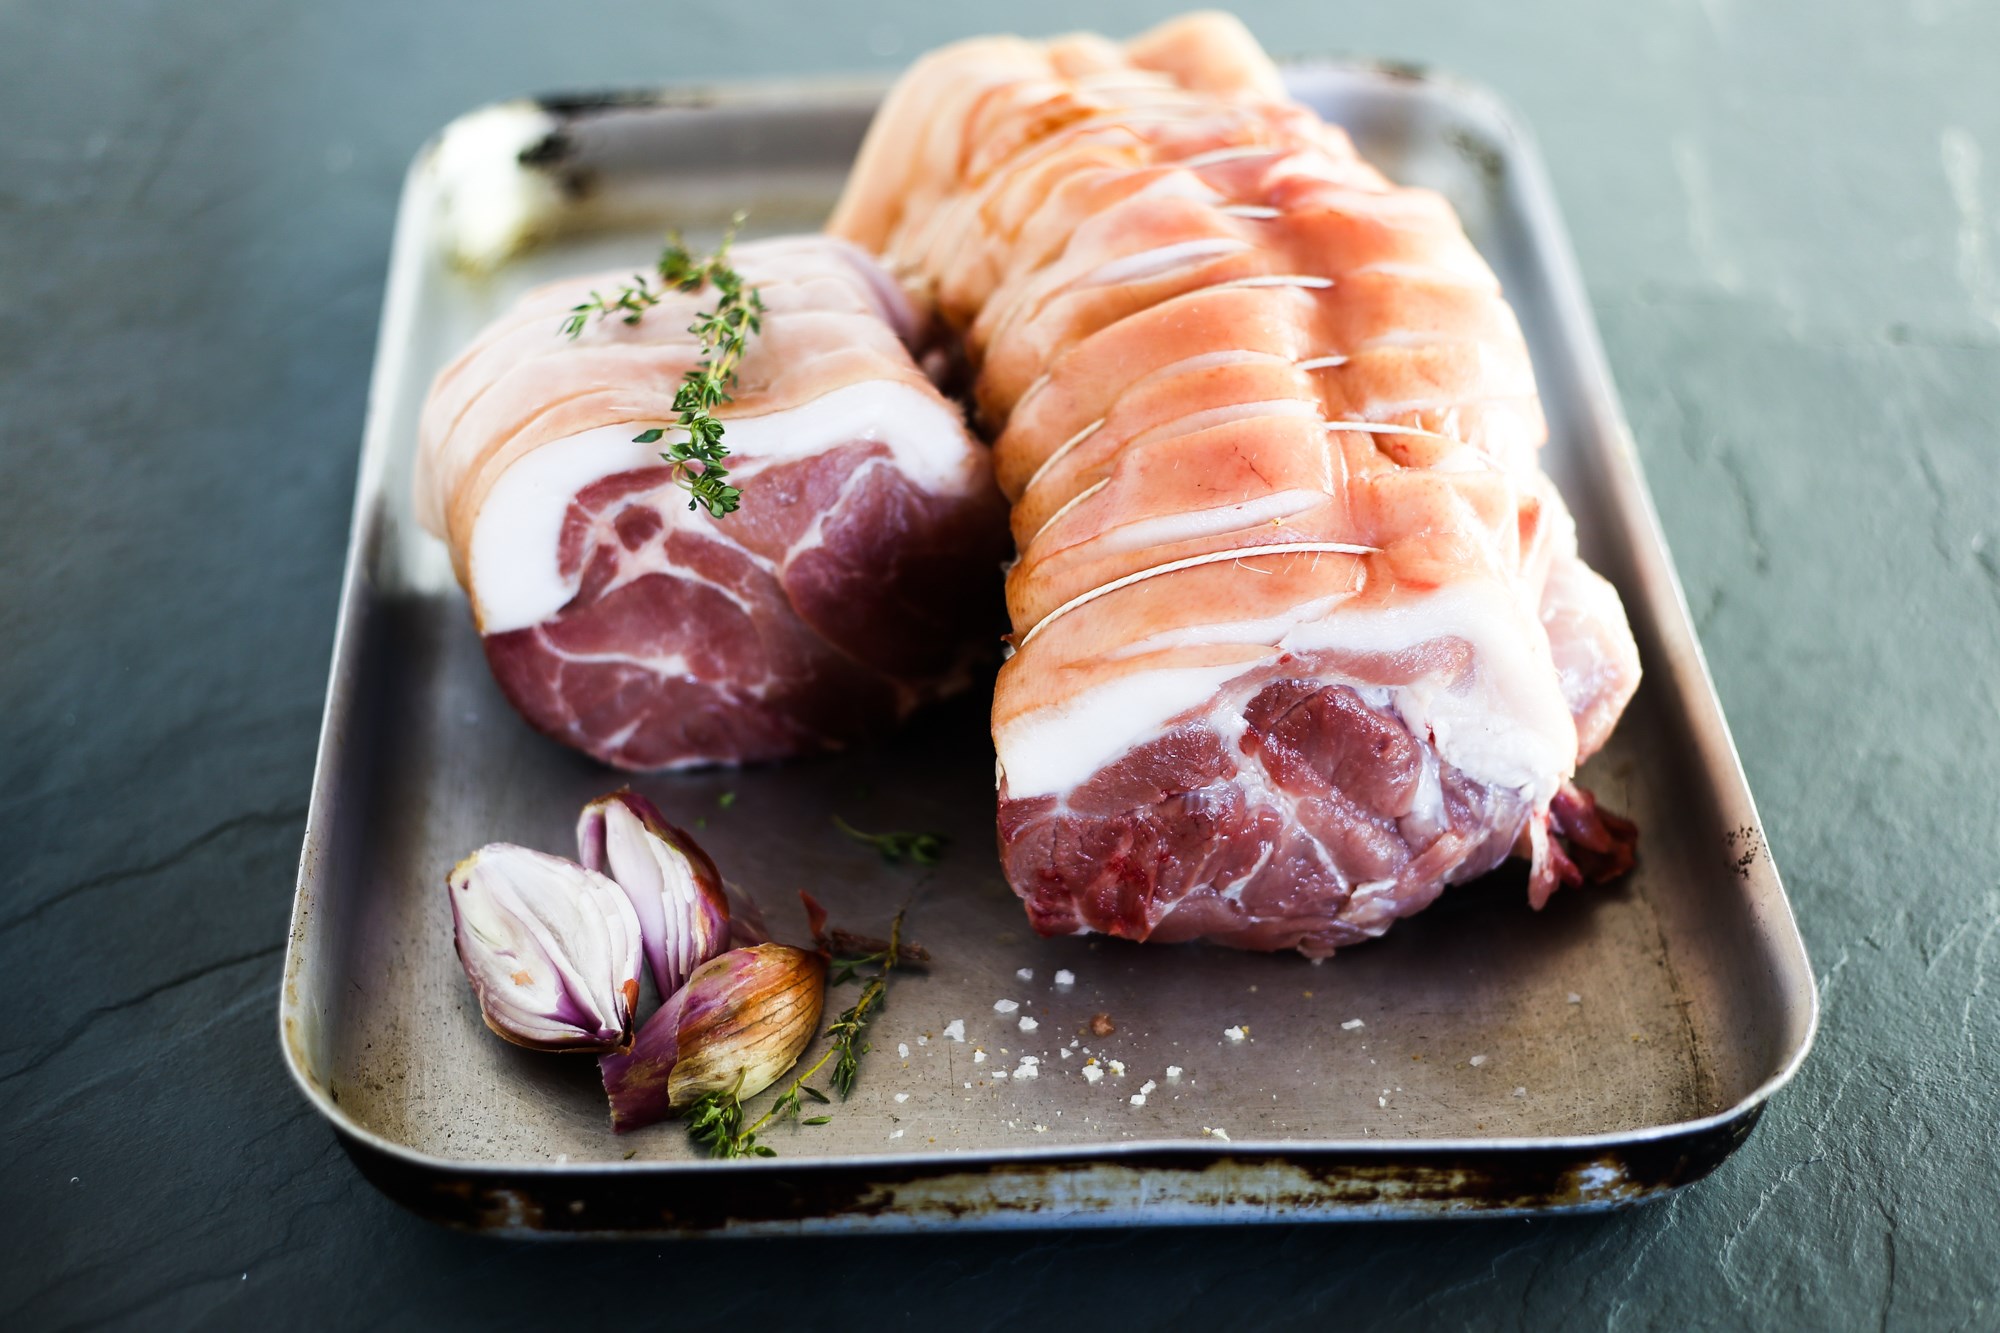 Boneless pork spare rib - 1.5kg